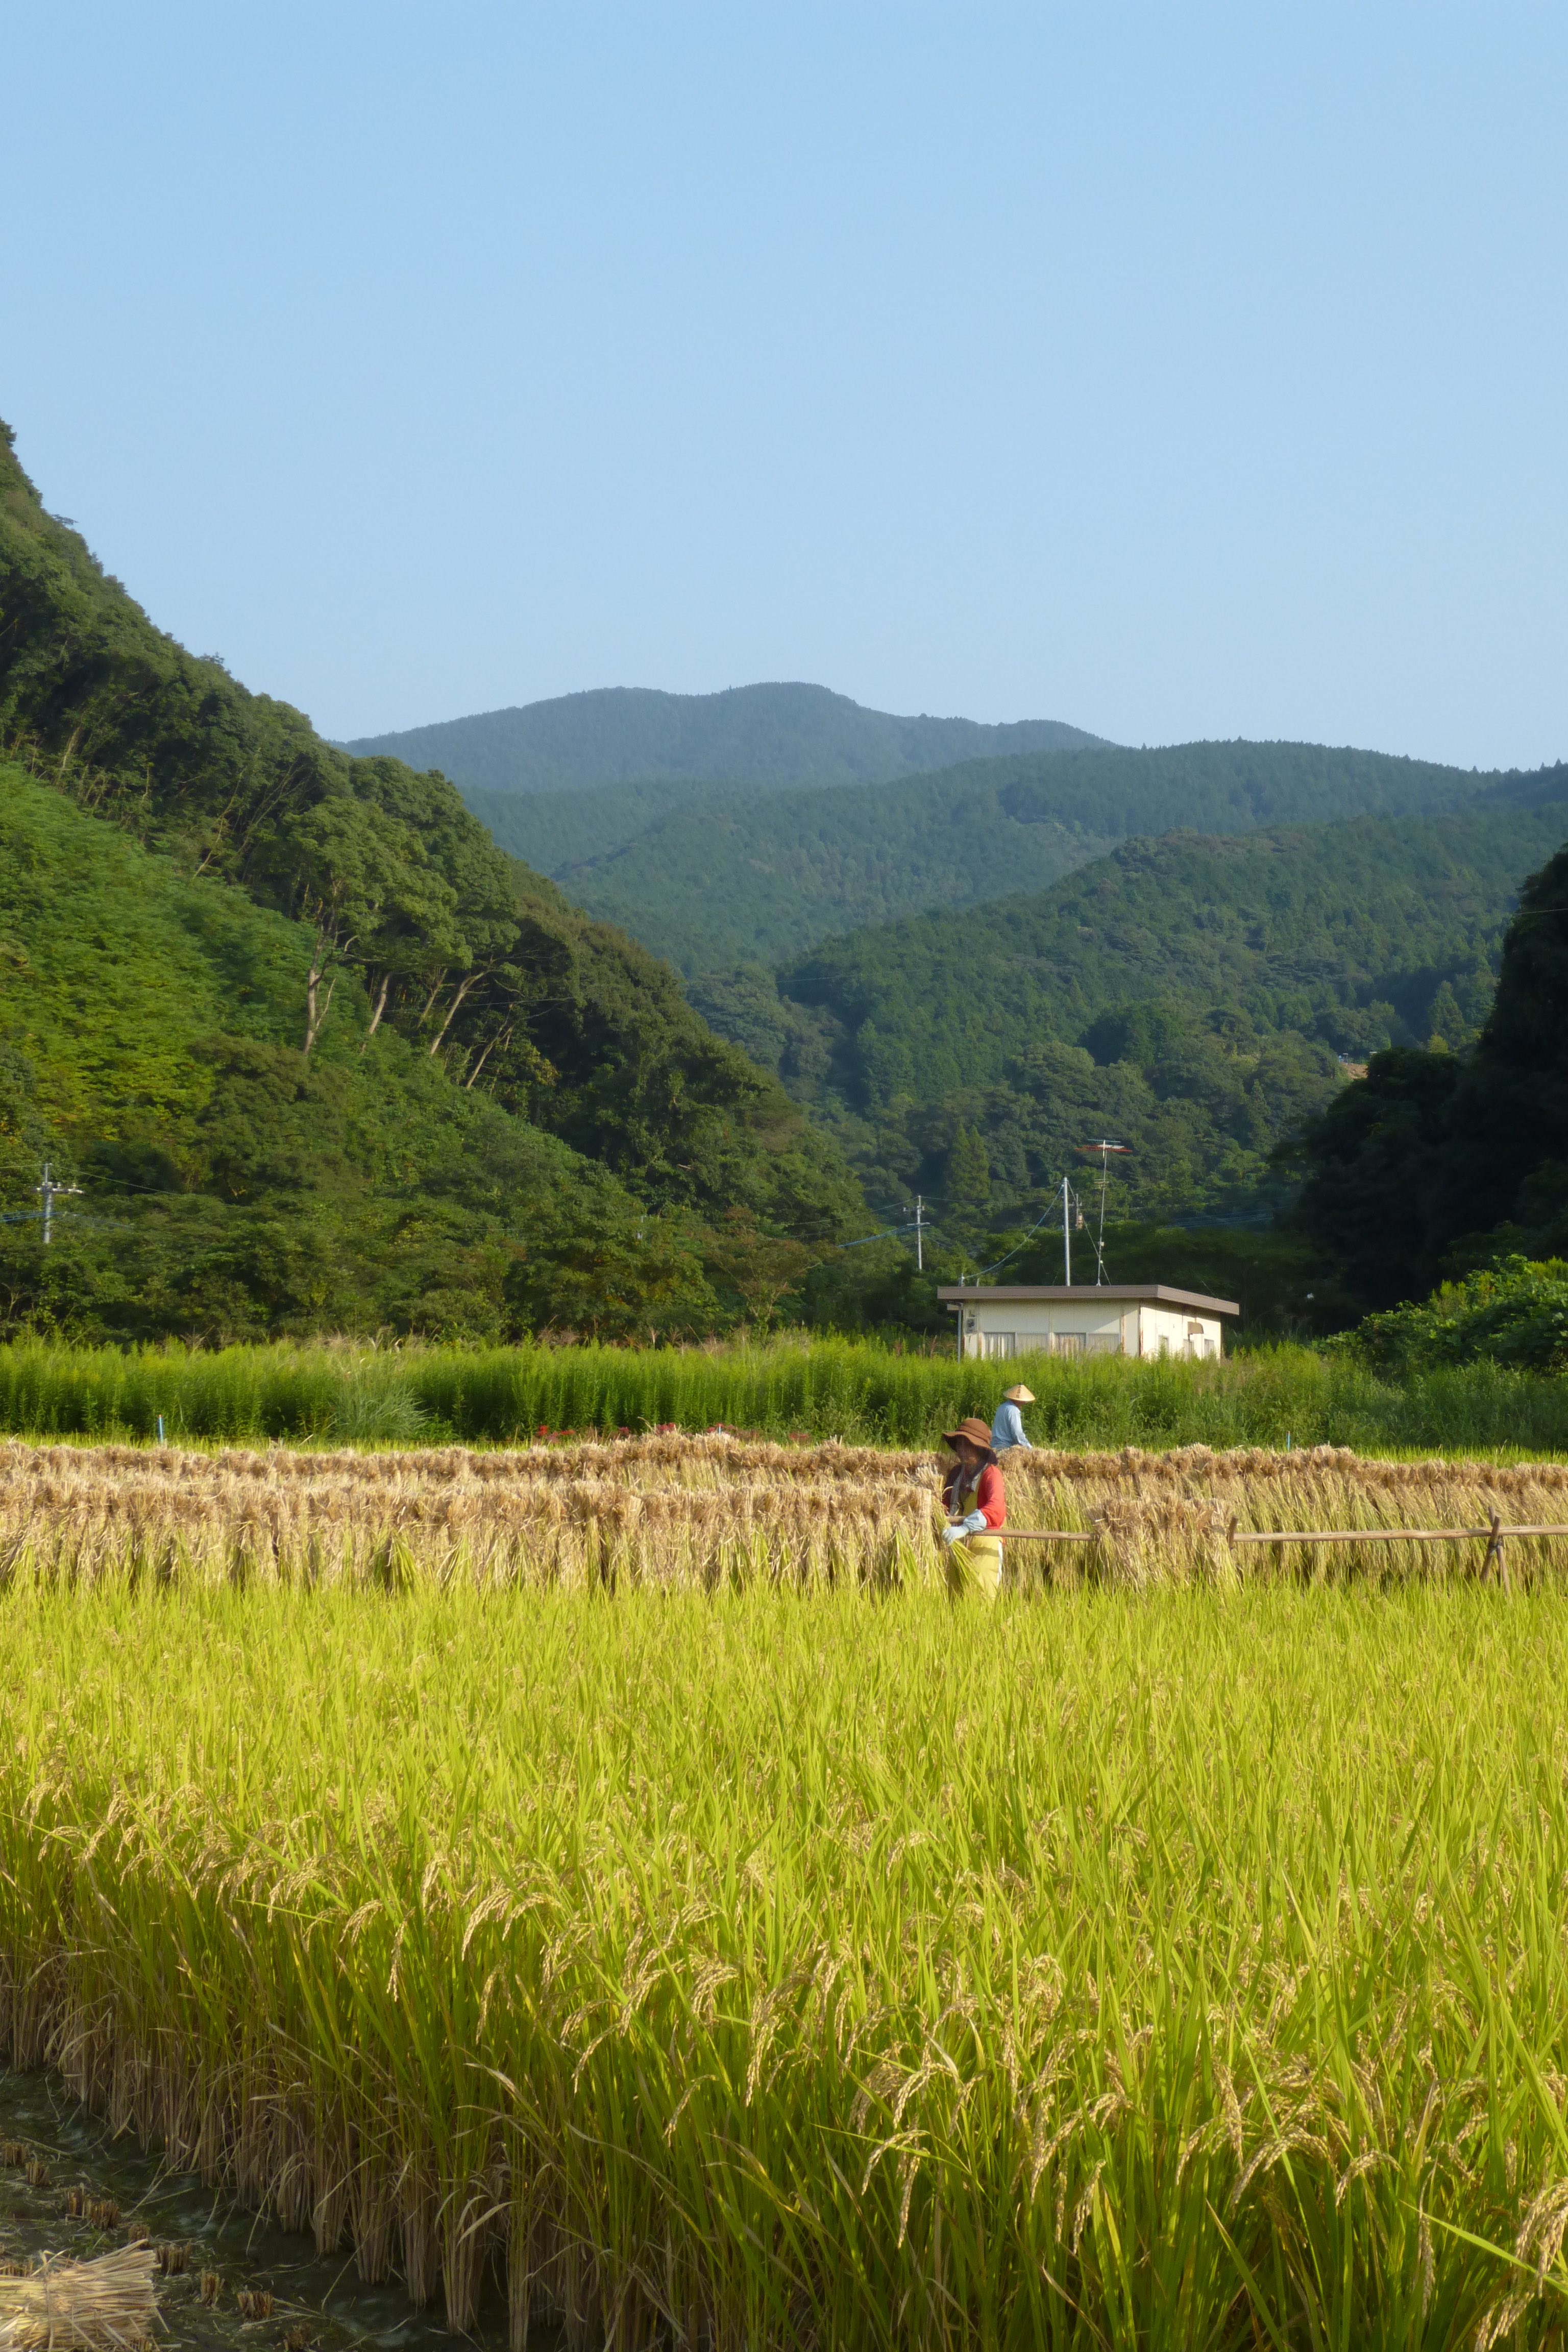 すでに強制収用された土地でも今までと変わらず稲を育てています。